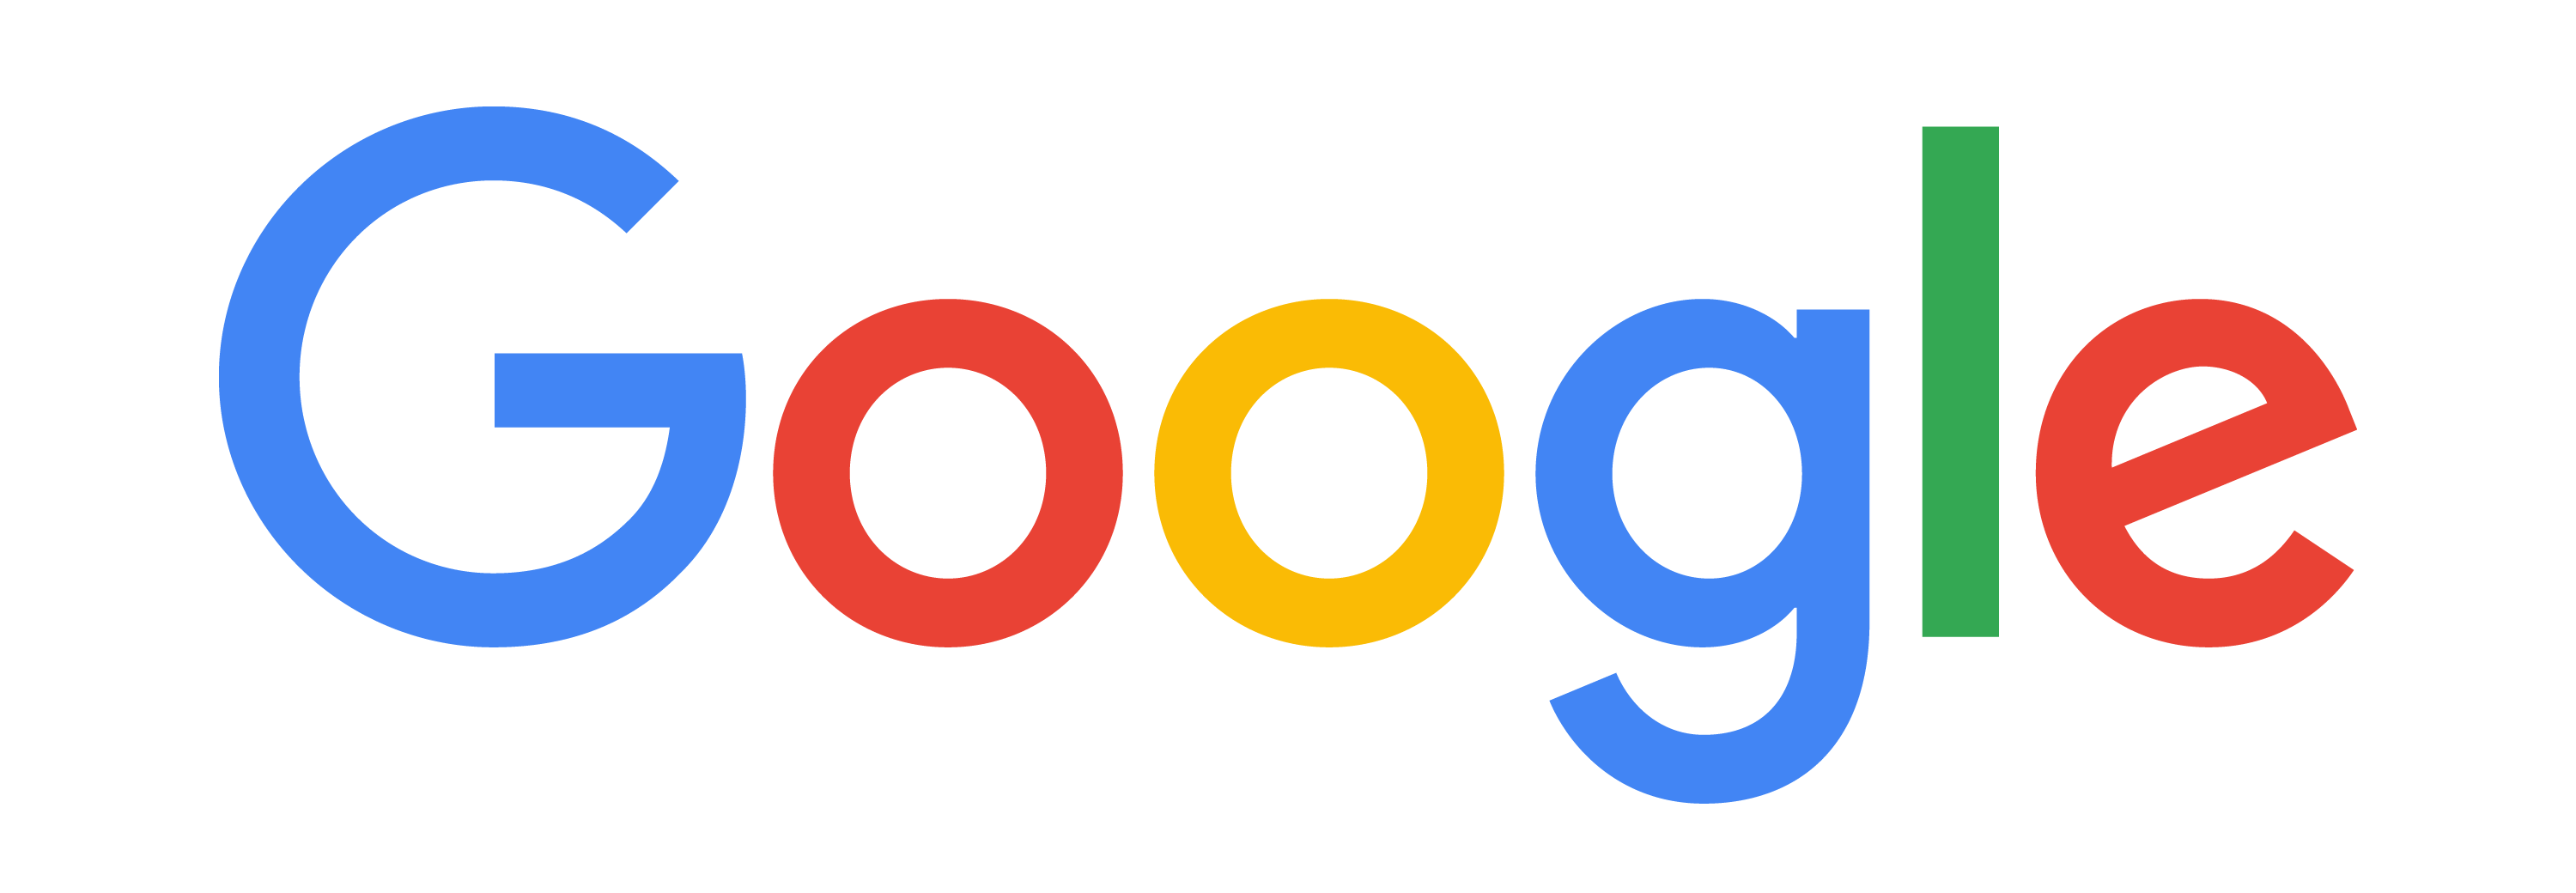 Google Moldova Digital Summit